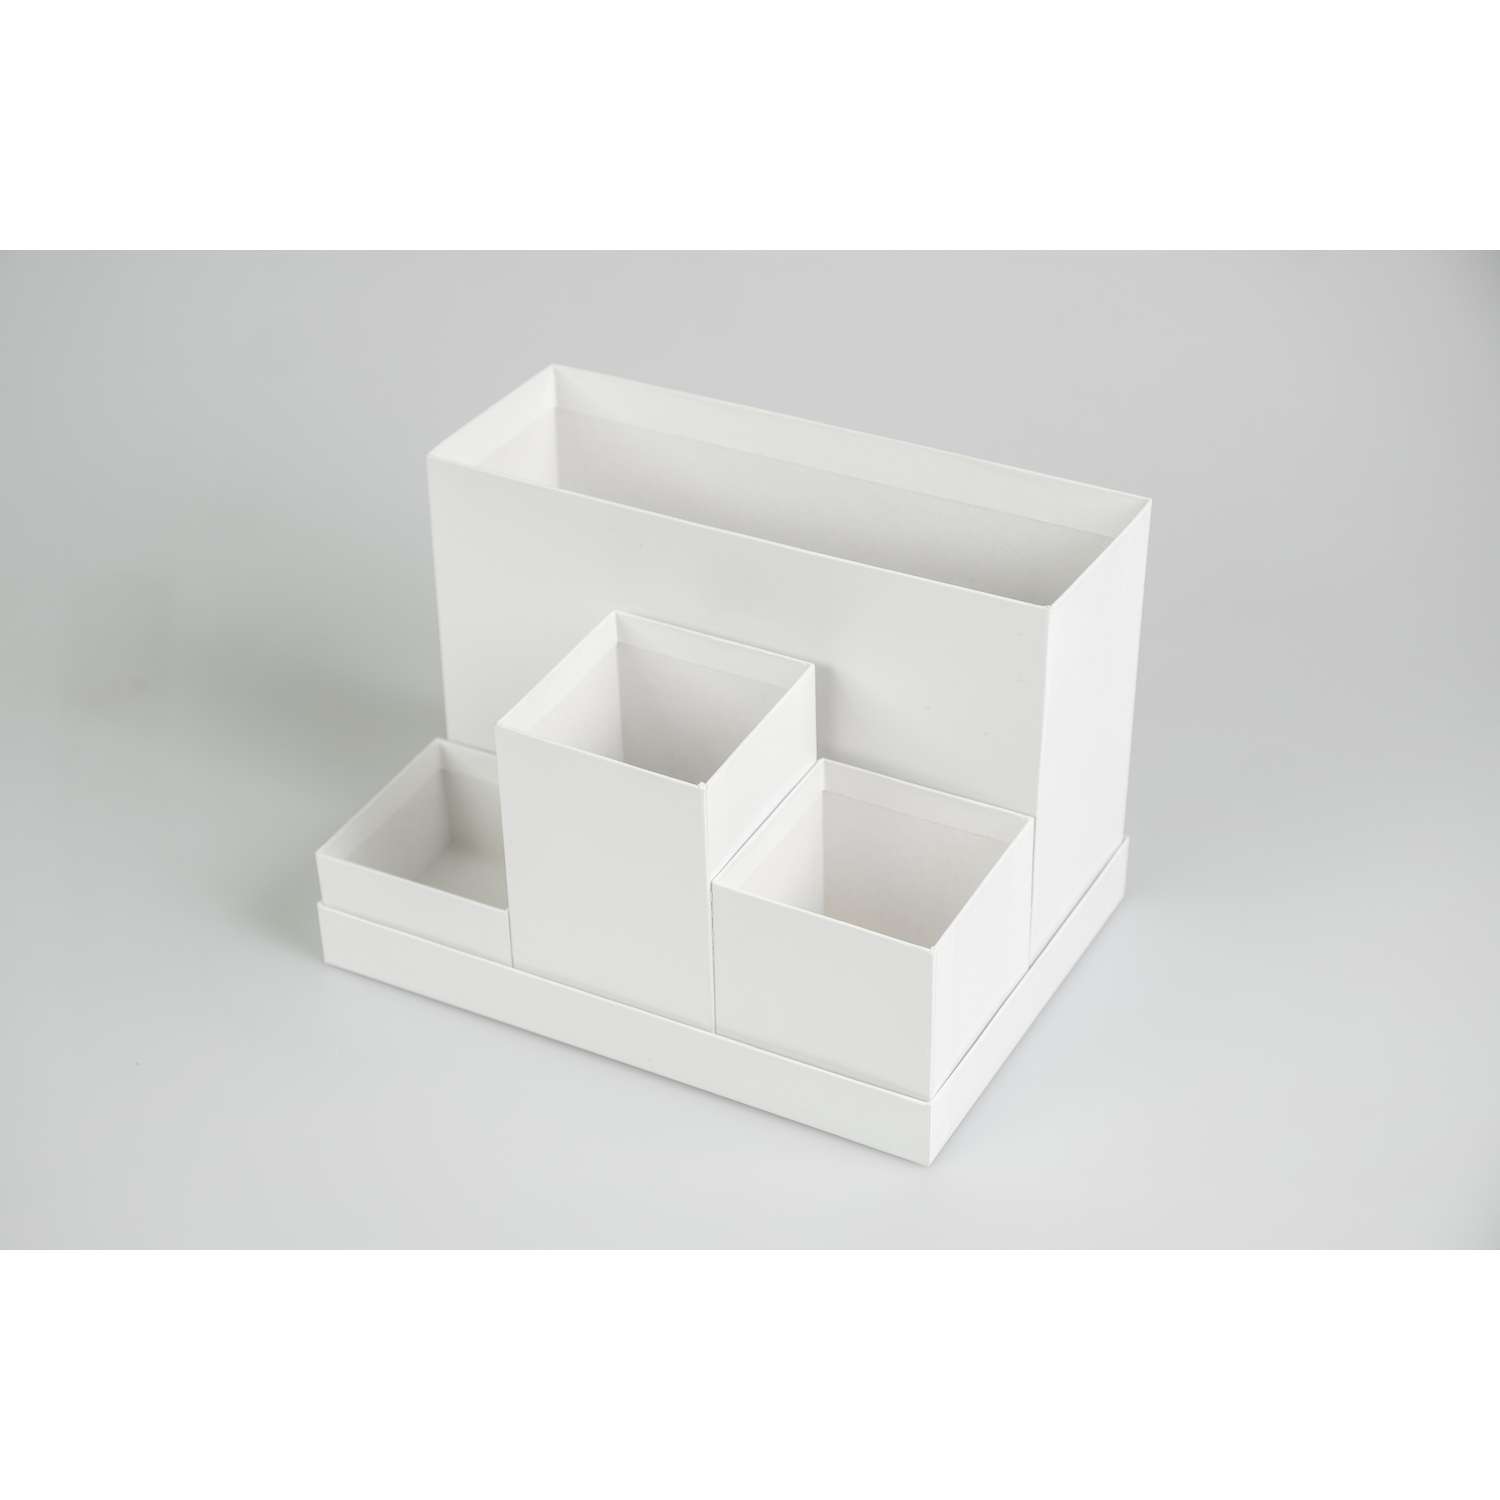 Органайзер настольный Cartonnage с 4 отдельными элементами для хранения канцелярии Классик белый - фото 4